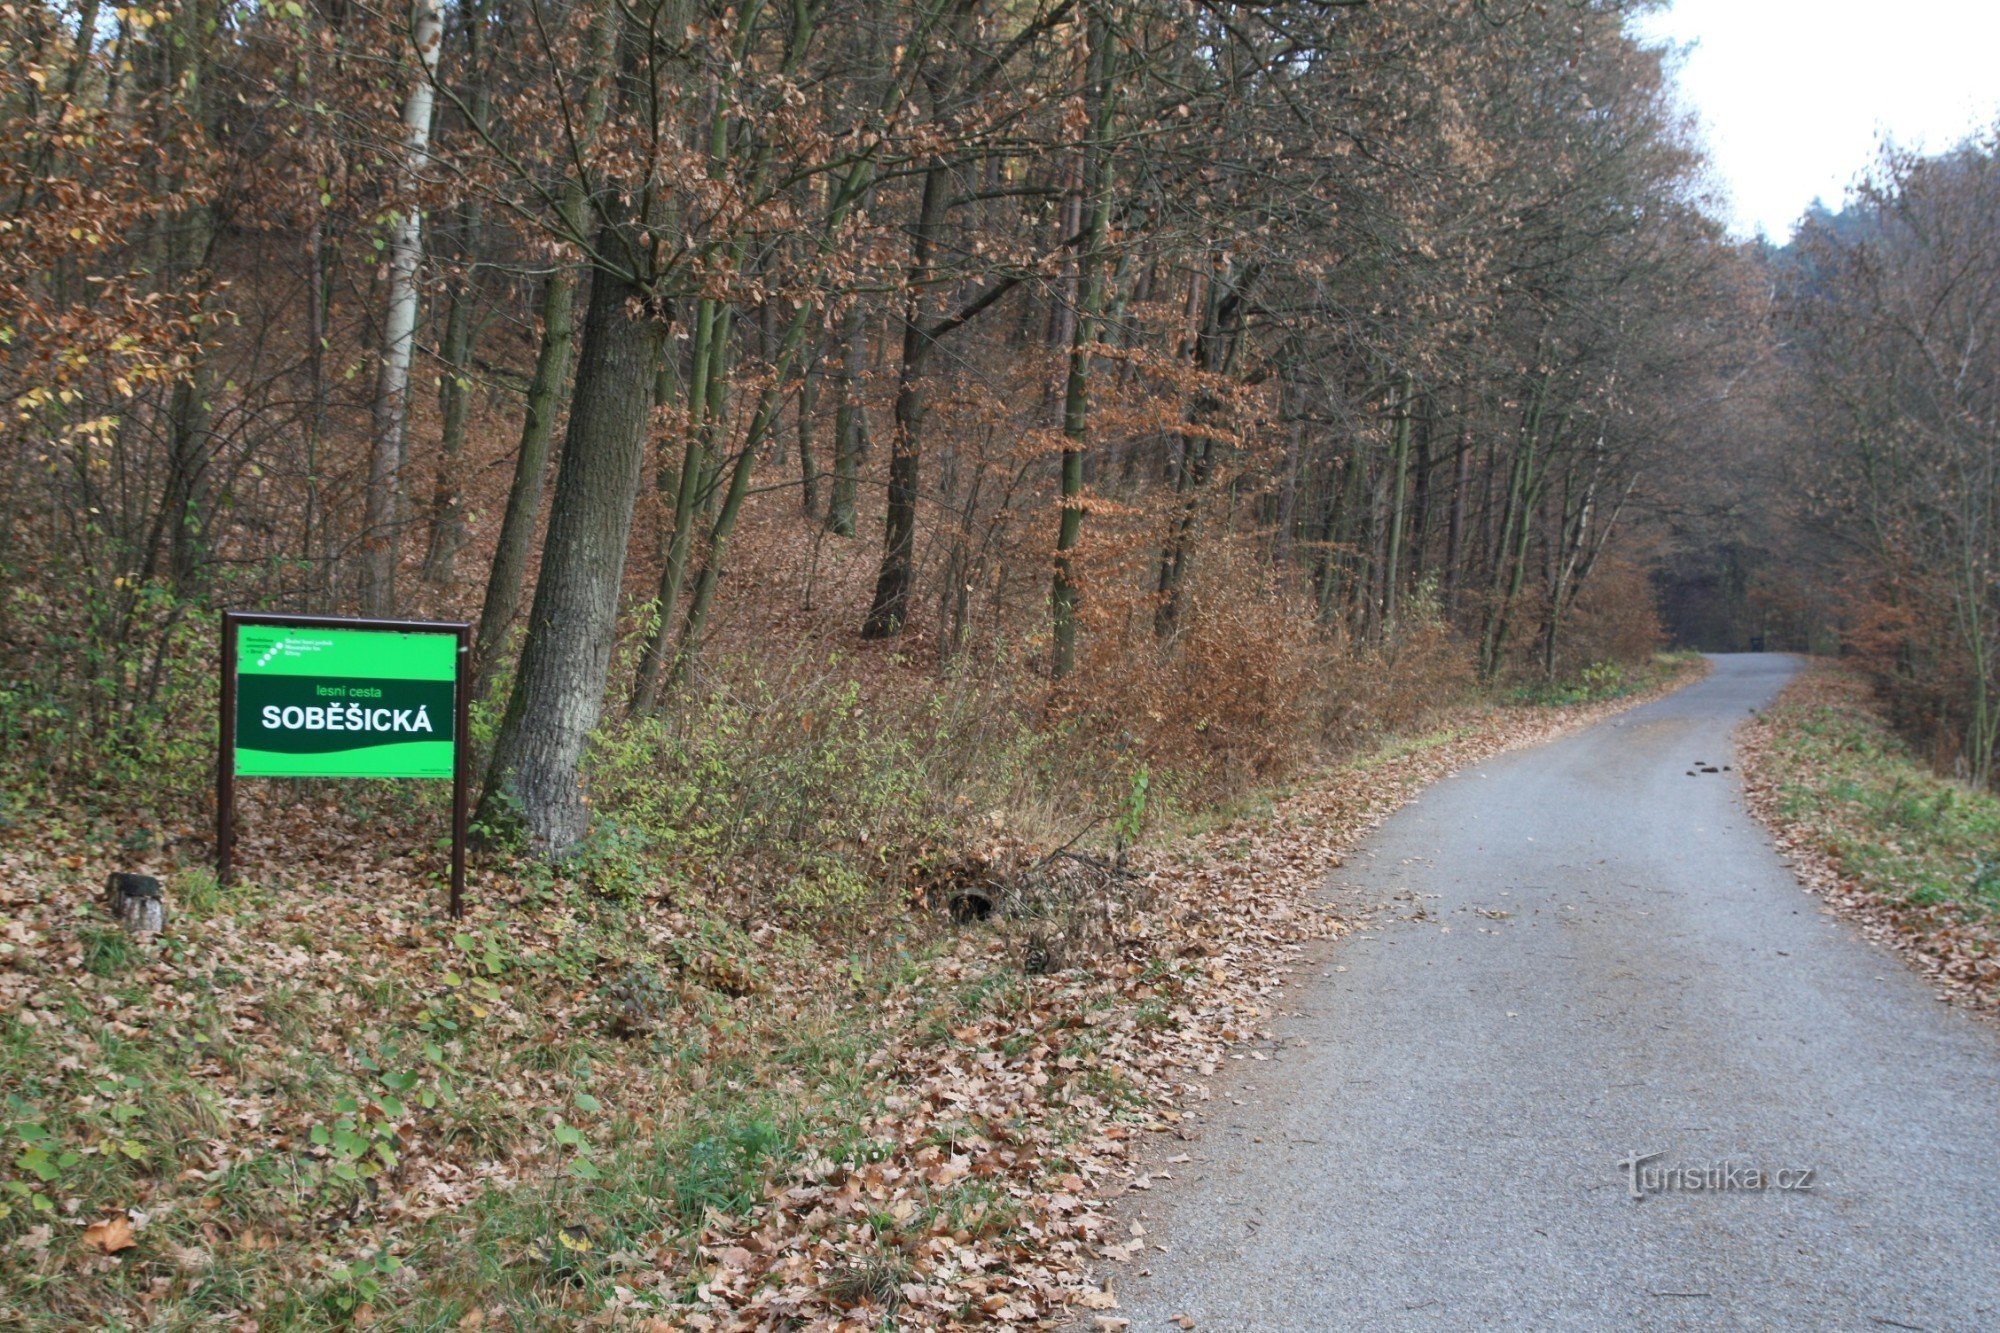 La Soběšická cesta inizia alla fine del villaggio all'inizio del bosco